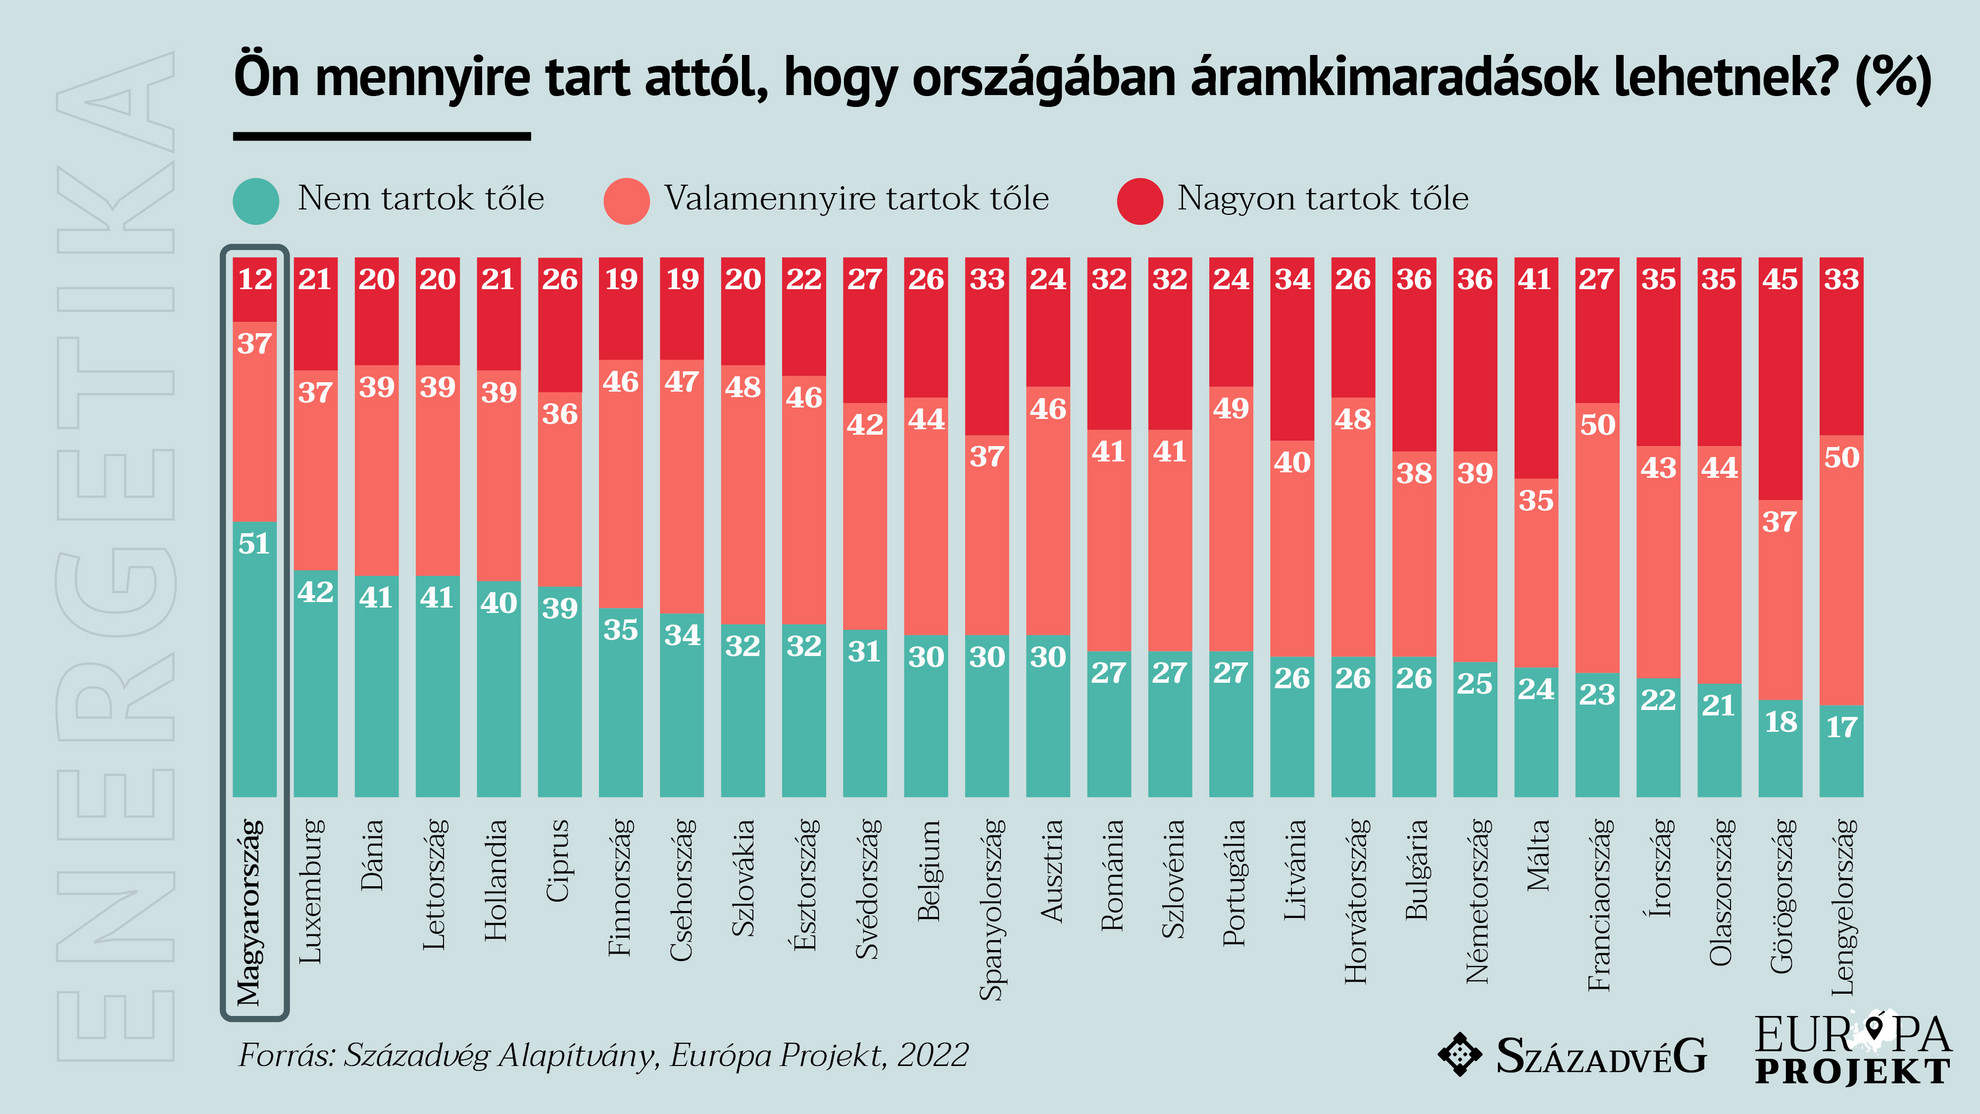 Egyedül Magyarországon vannak többségben azok, akik bíznak az energiaellátásban